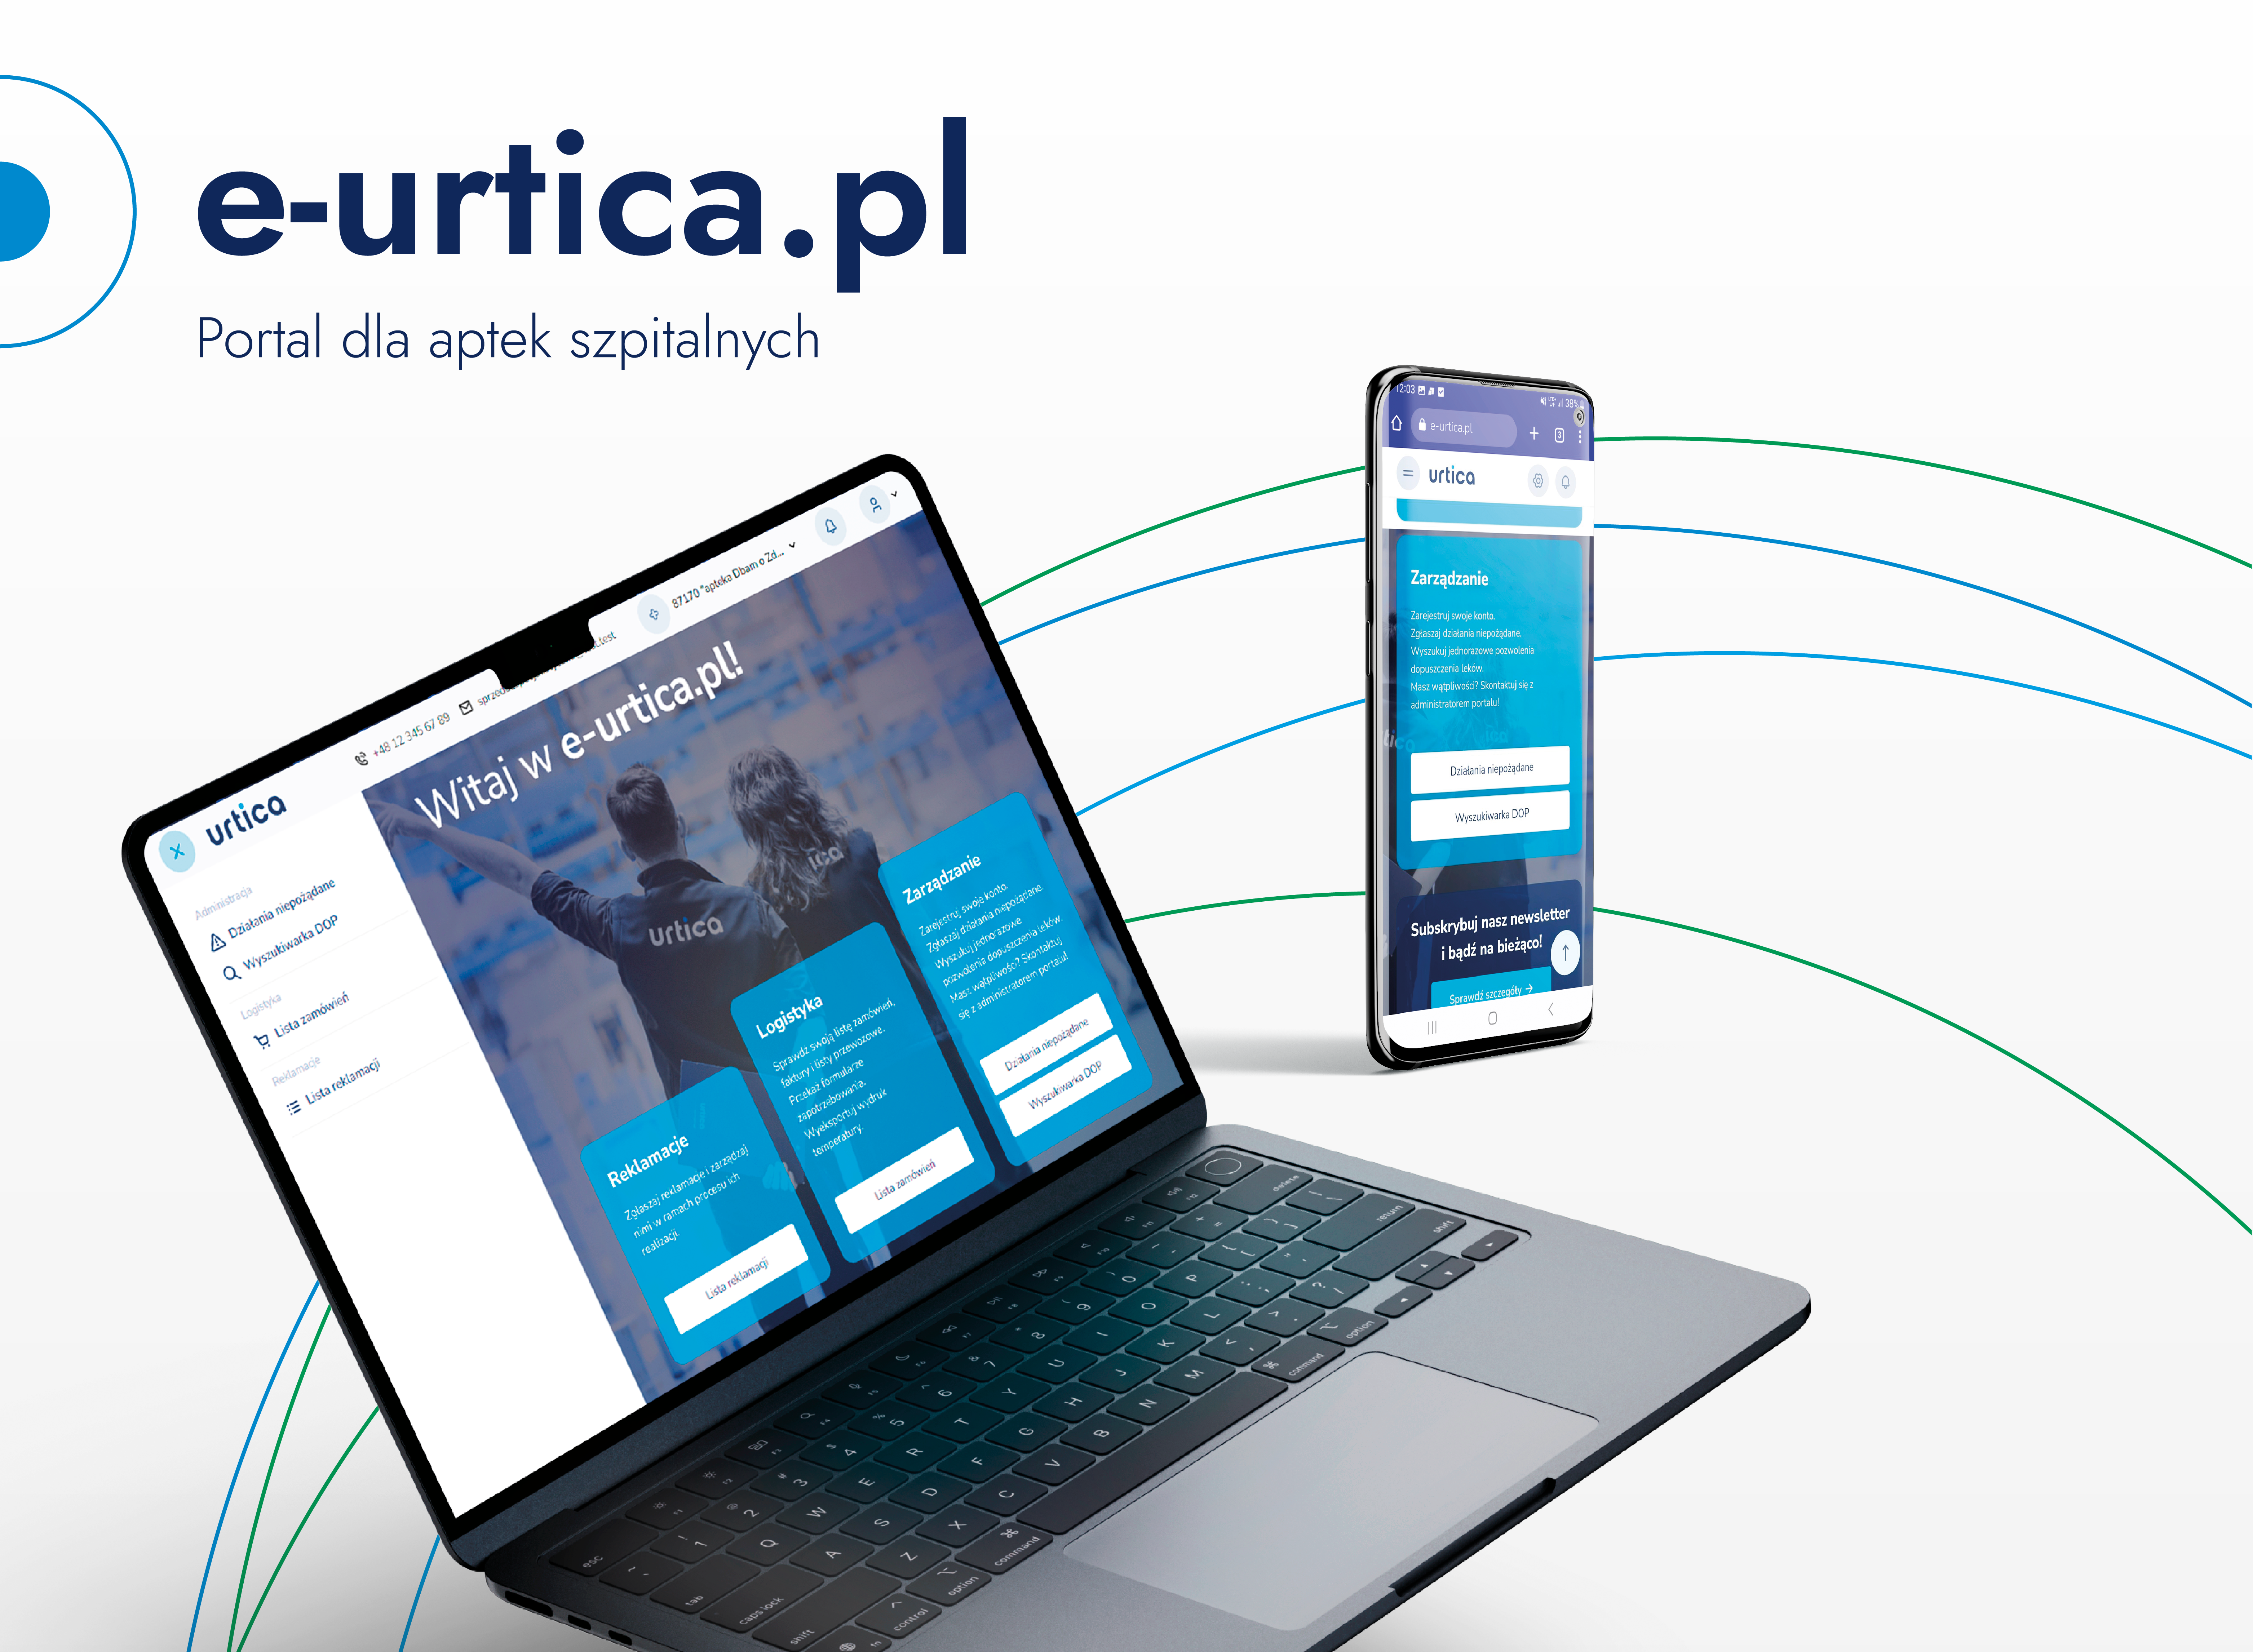 e-urtica-portal-dla-aptek-szpitalnych Aktualności